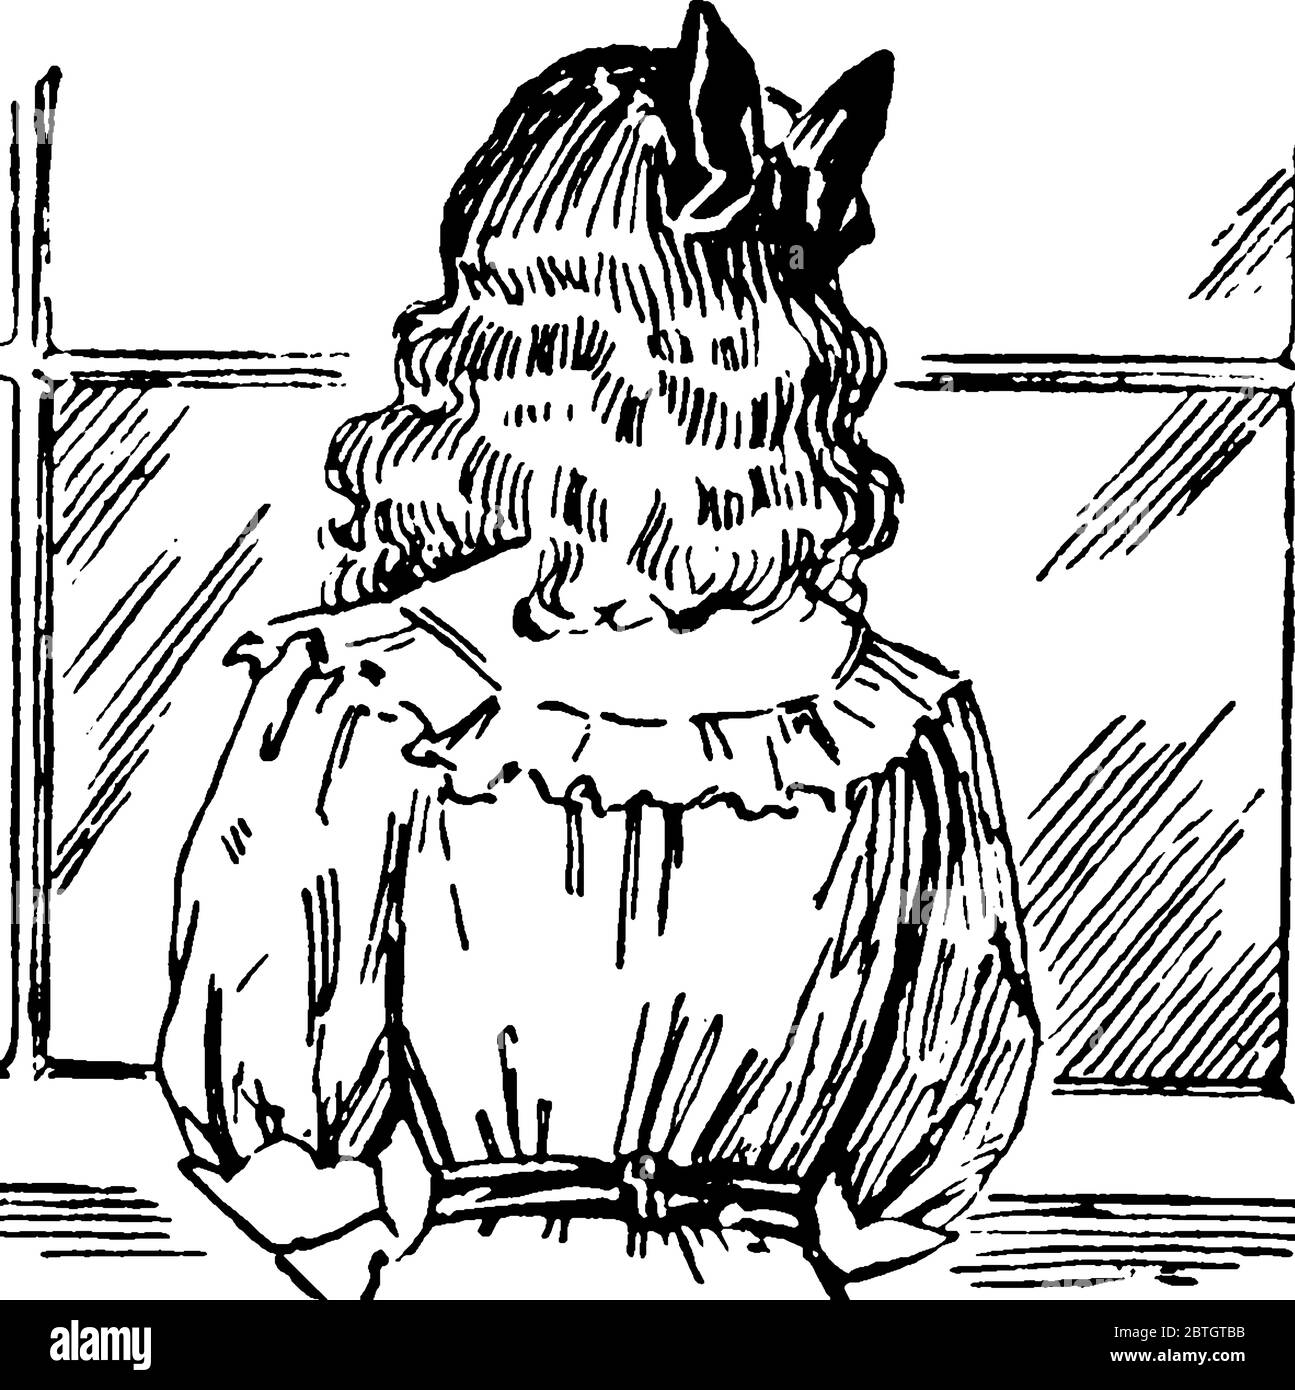 L'image représente le dos de la fille à la fenêtre avec un noeud attaché à ses cheveux amples, dessin de ligne vintage ou illustration de gravure. Illustration de Vecteur